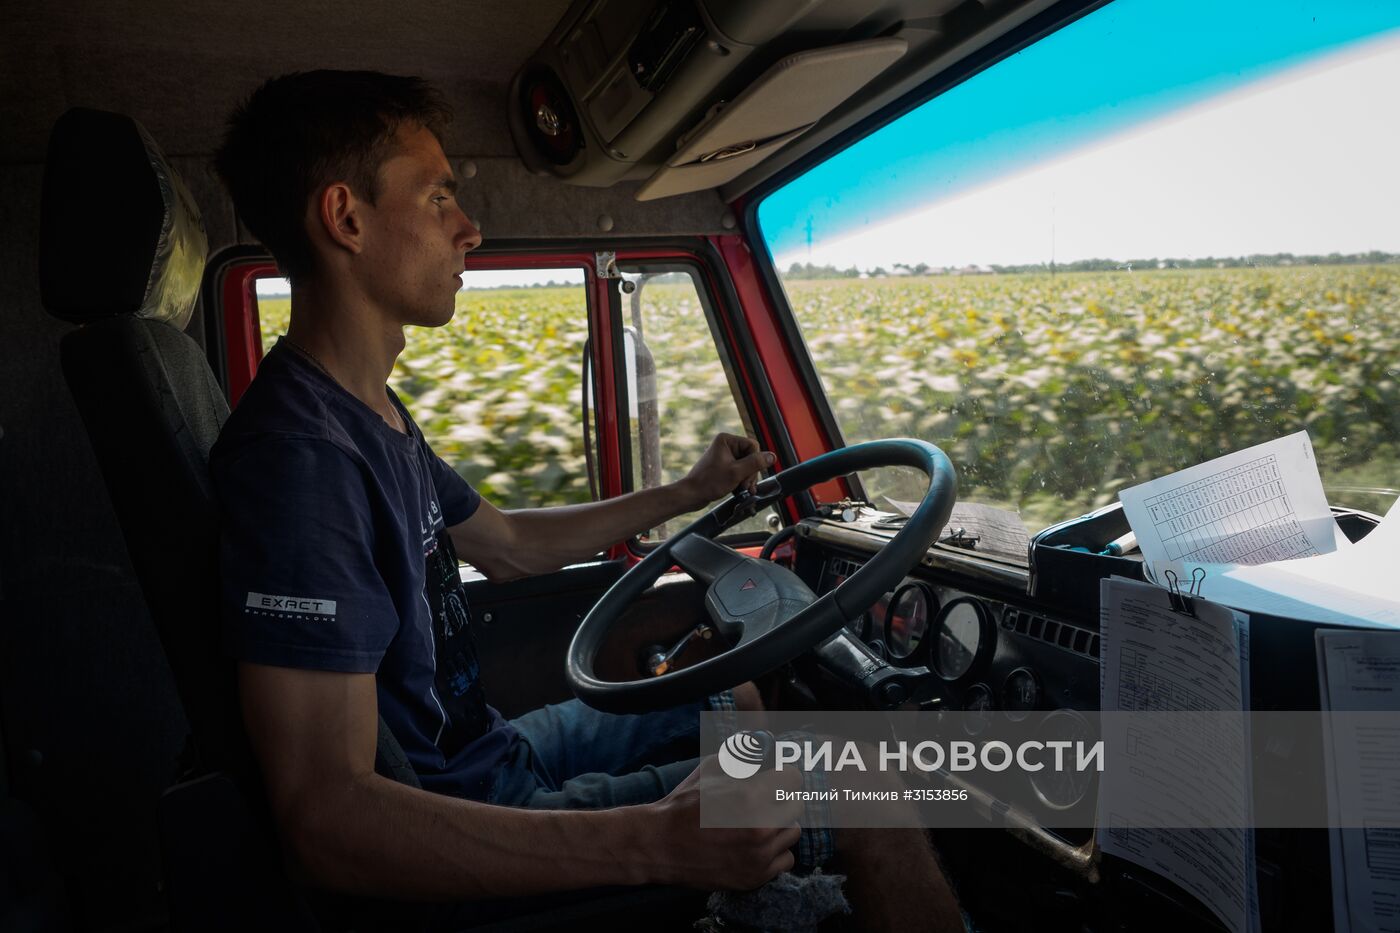 Уборка зерновых в Краснодарском крае